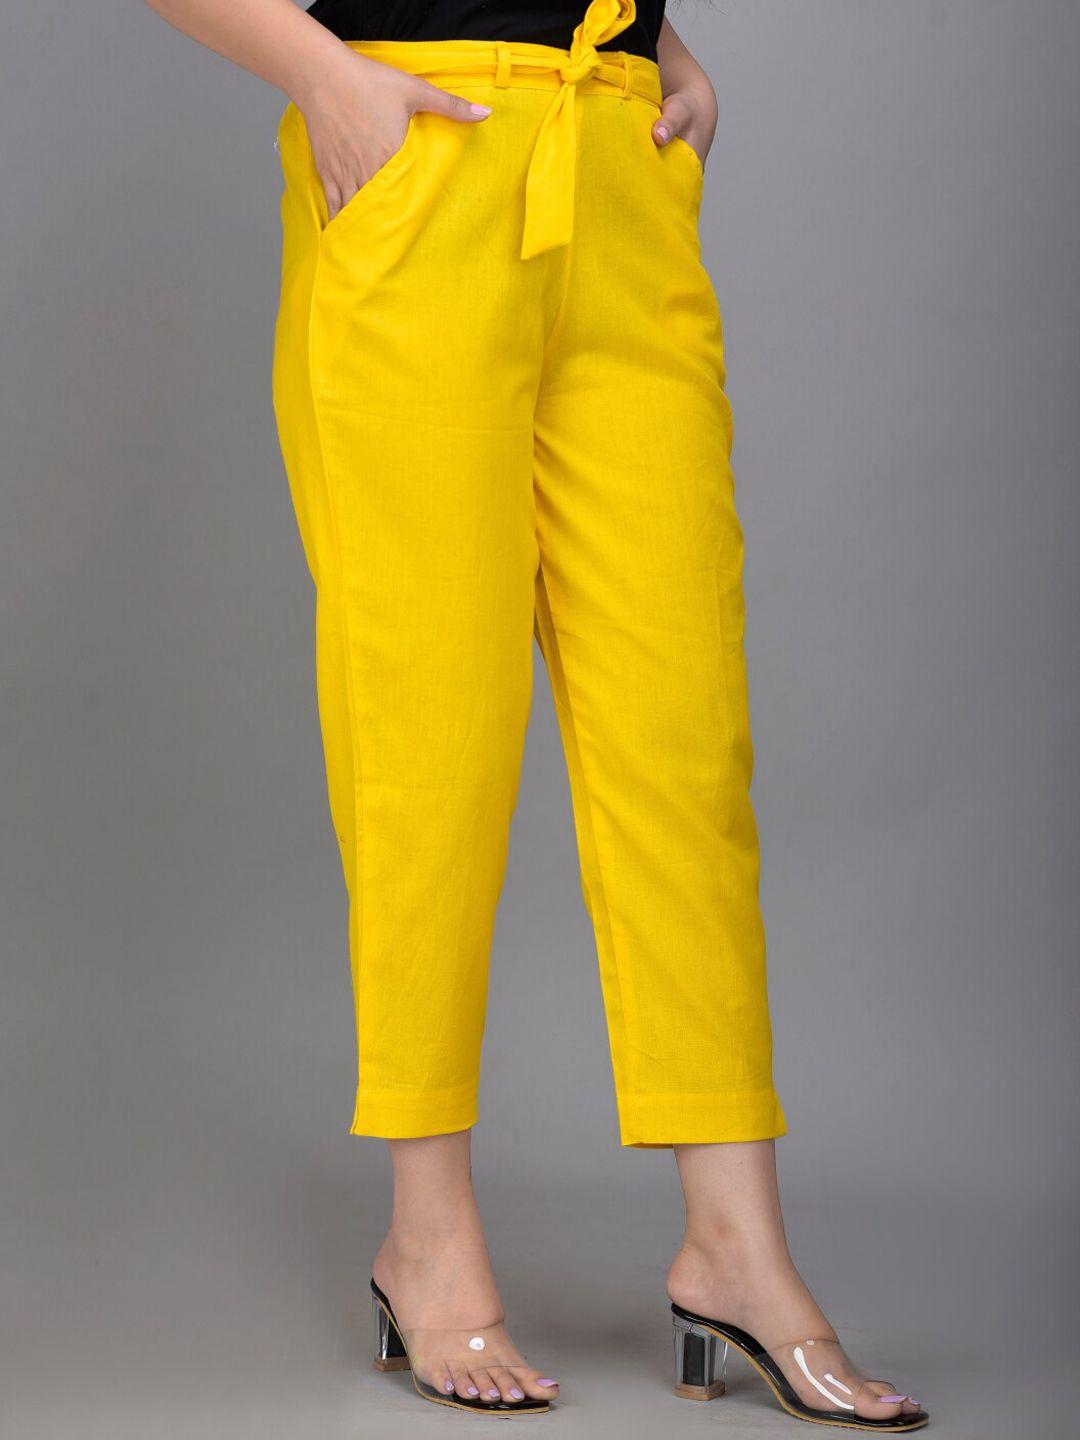 iqraar women yellow slim fit trousers